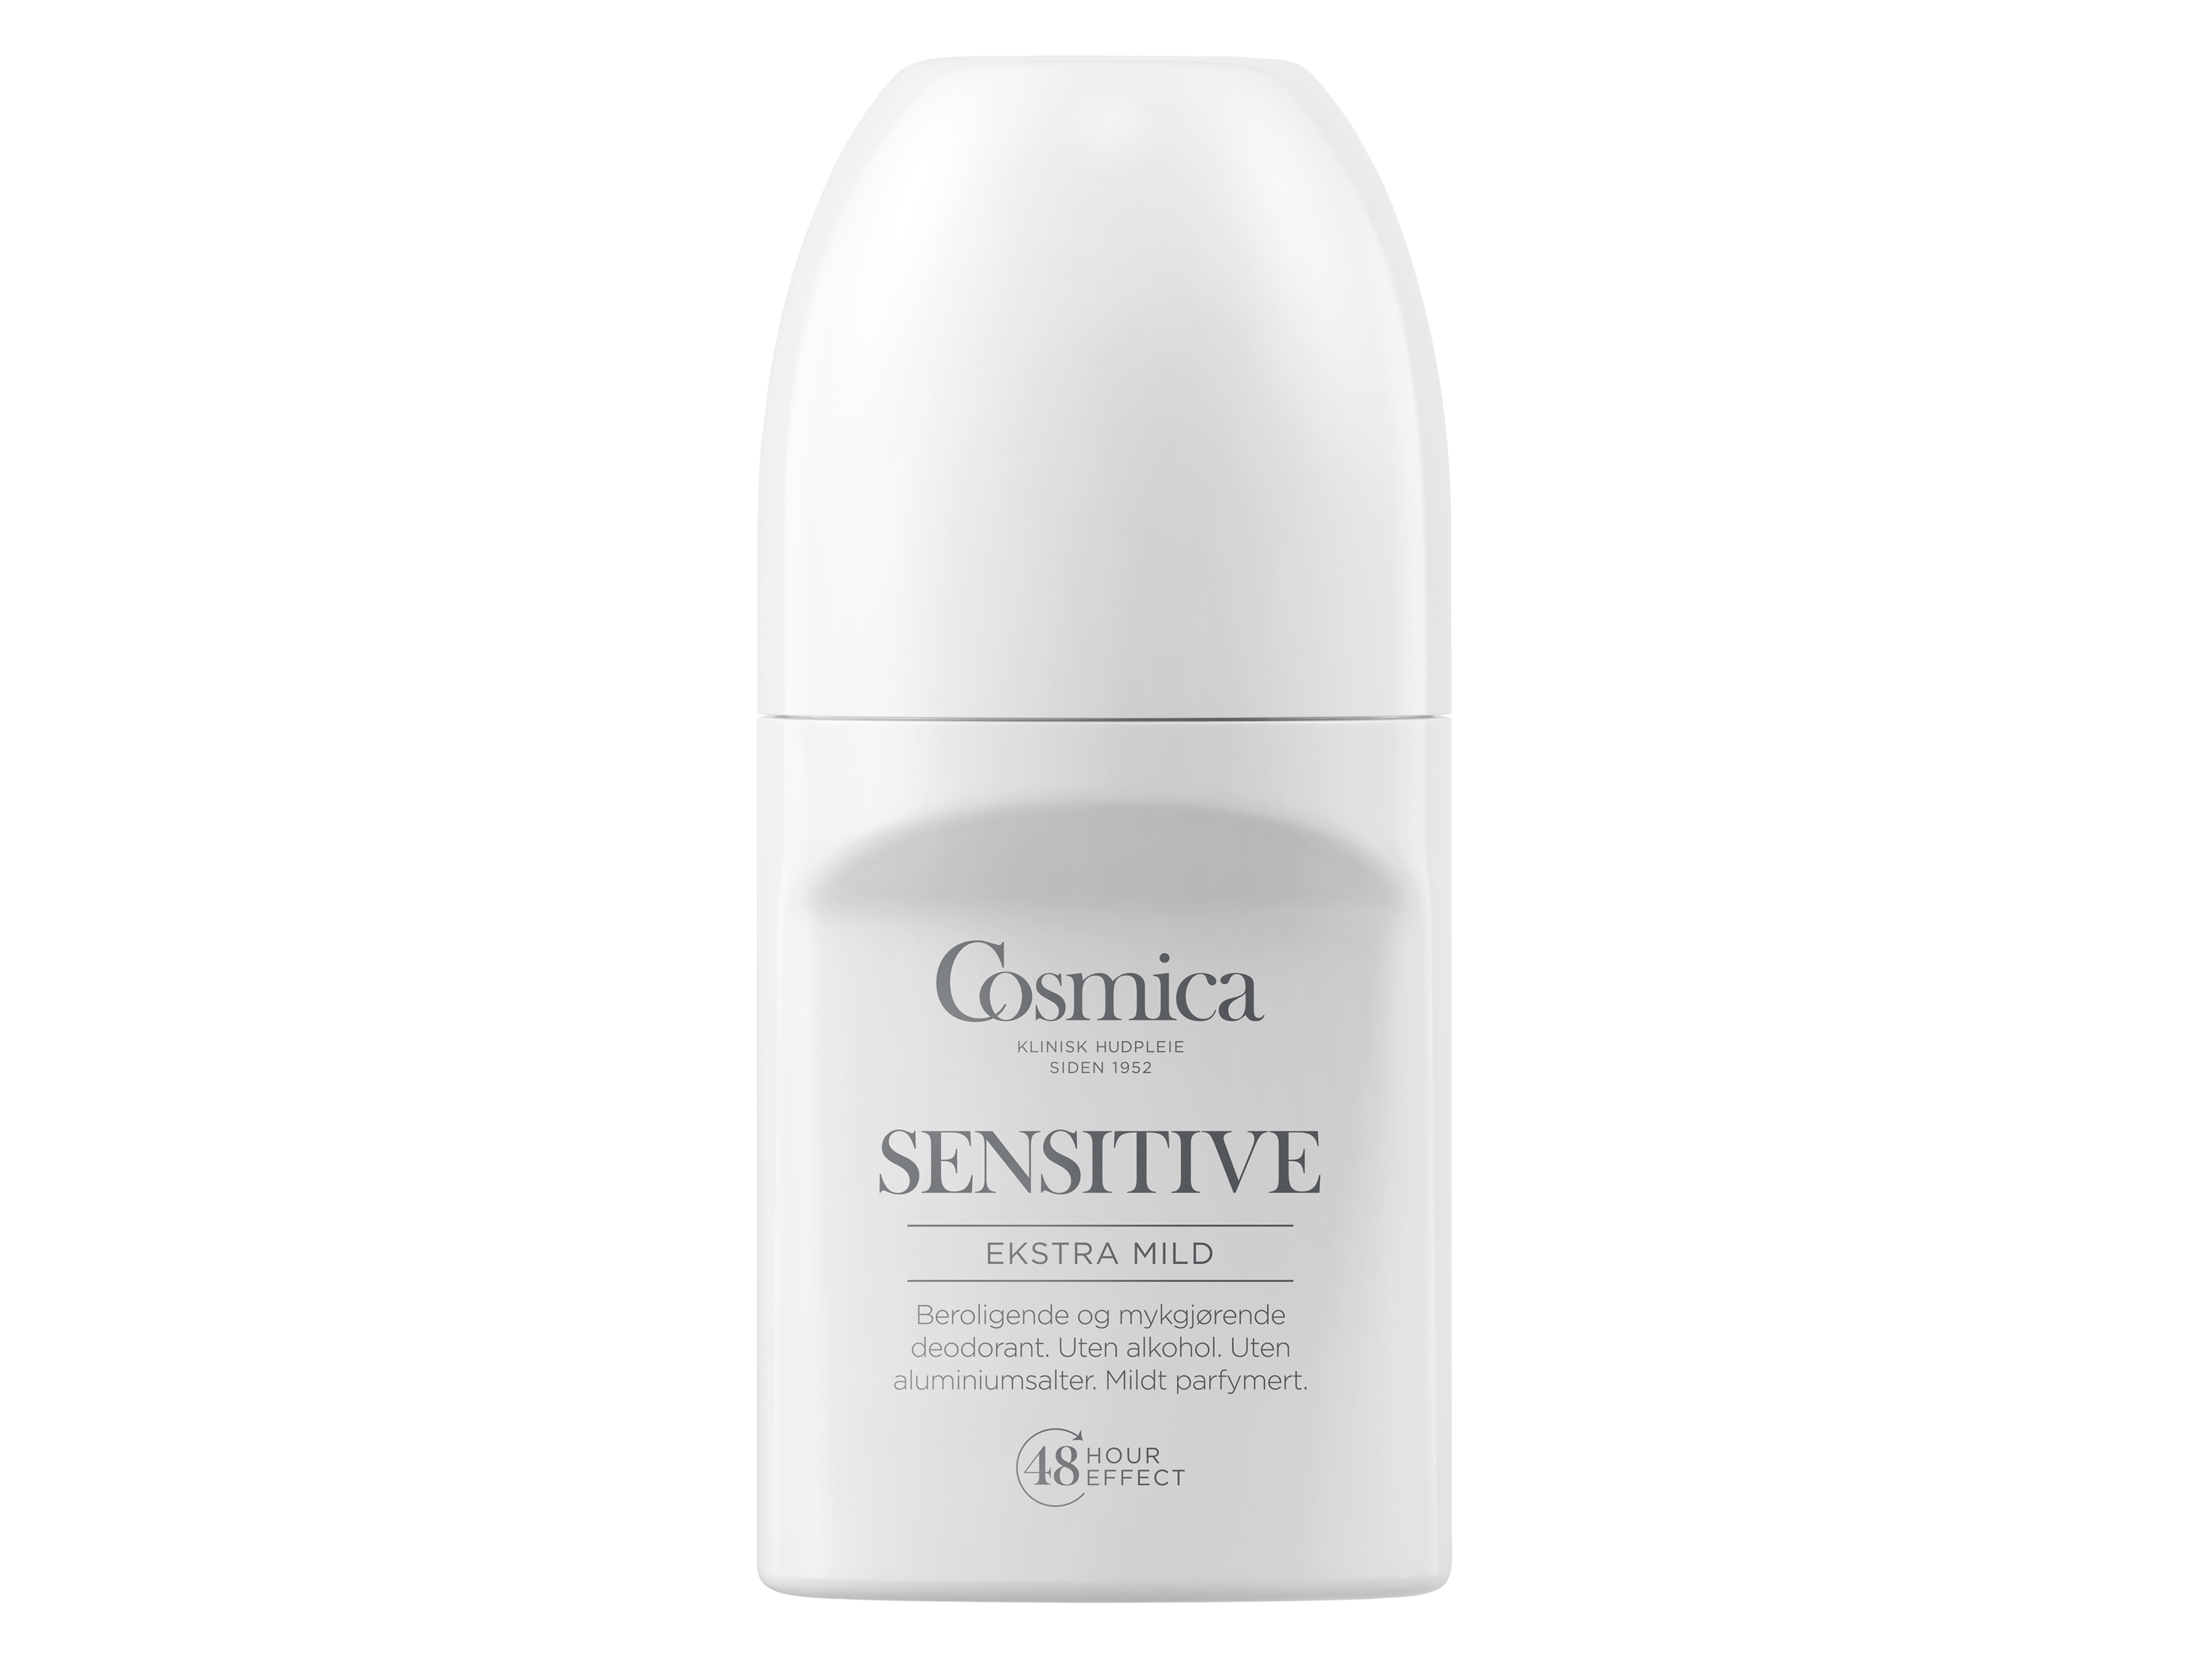 Cosmica Sensitive Deodorant m/p, 50 ml